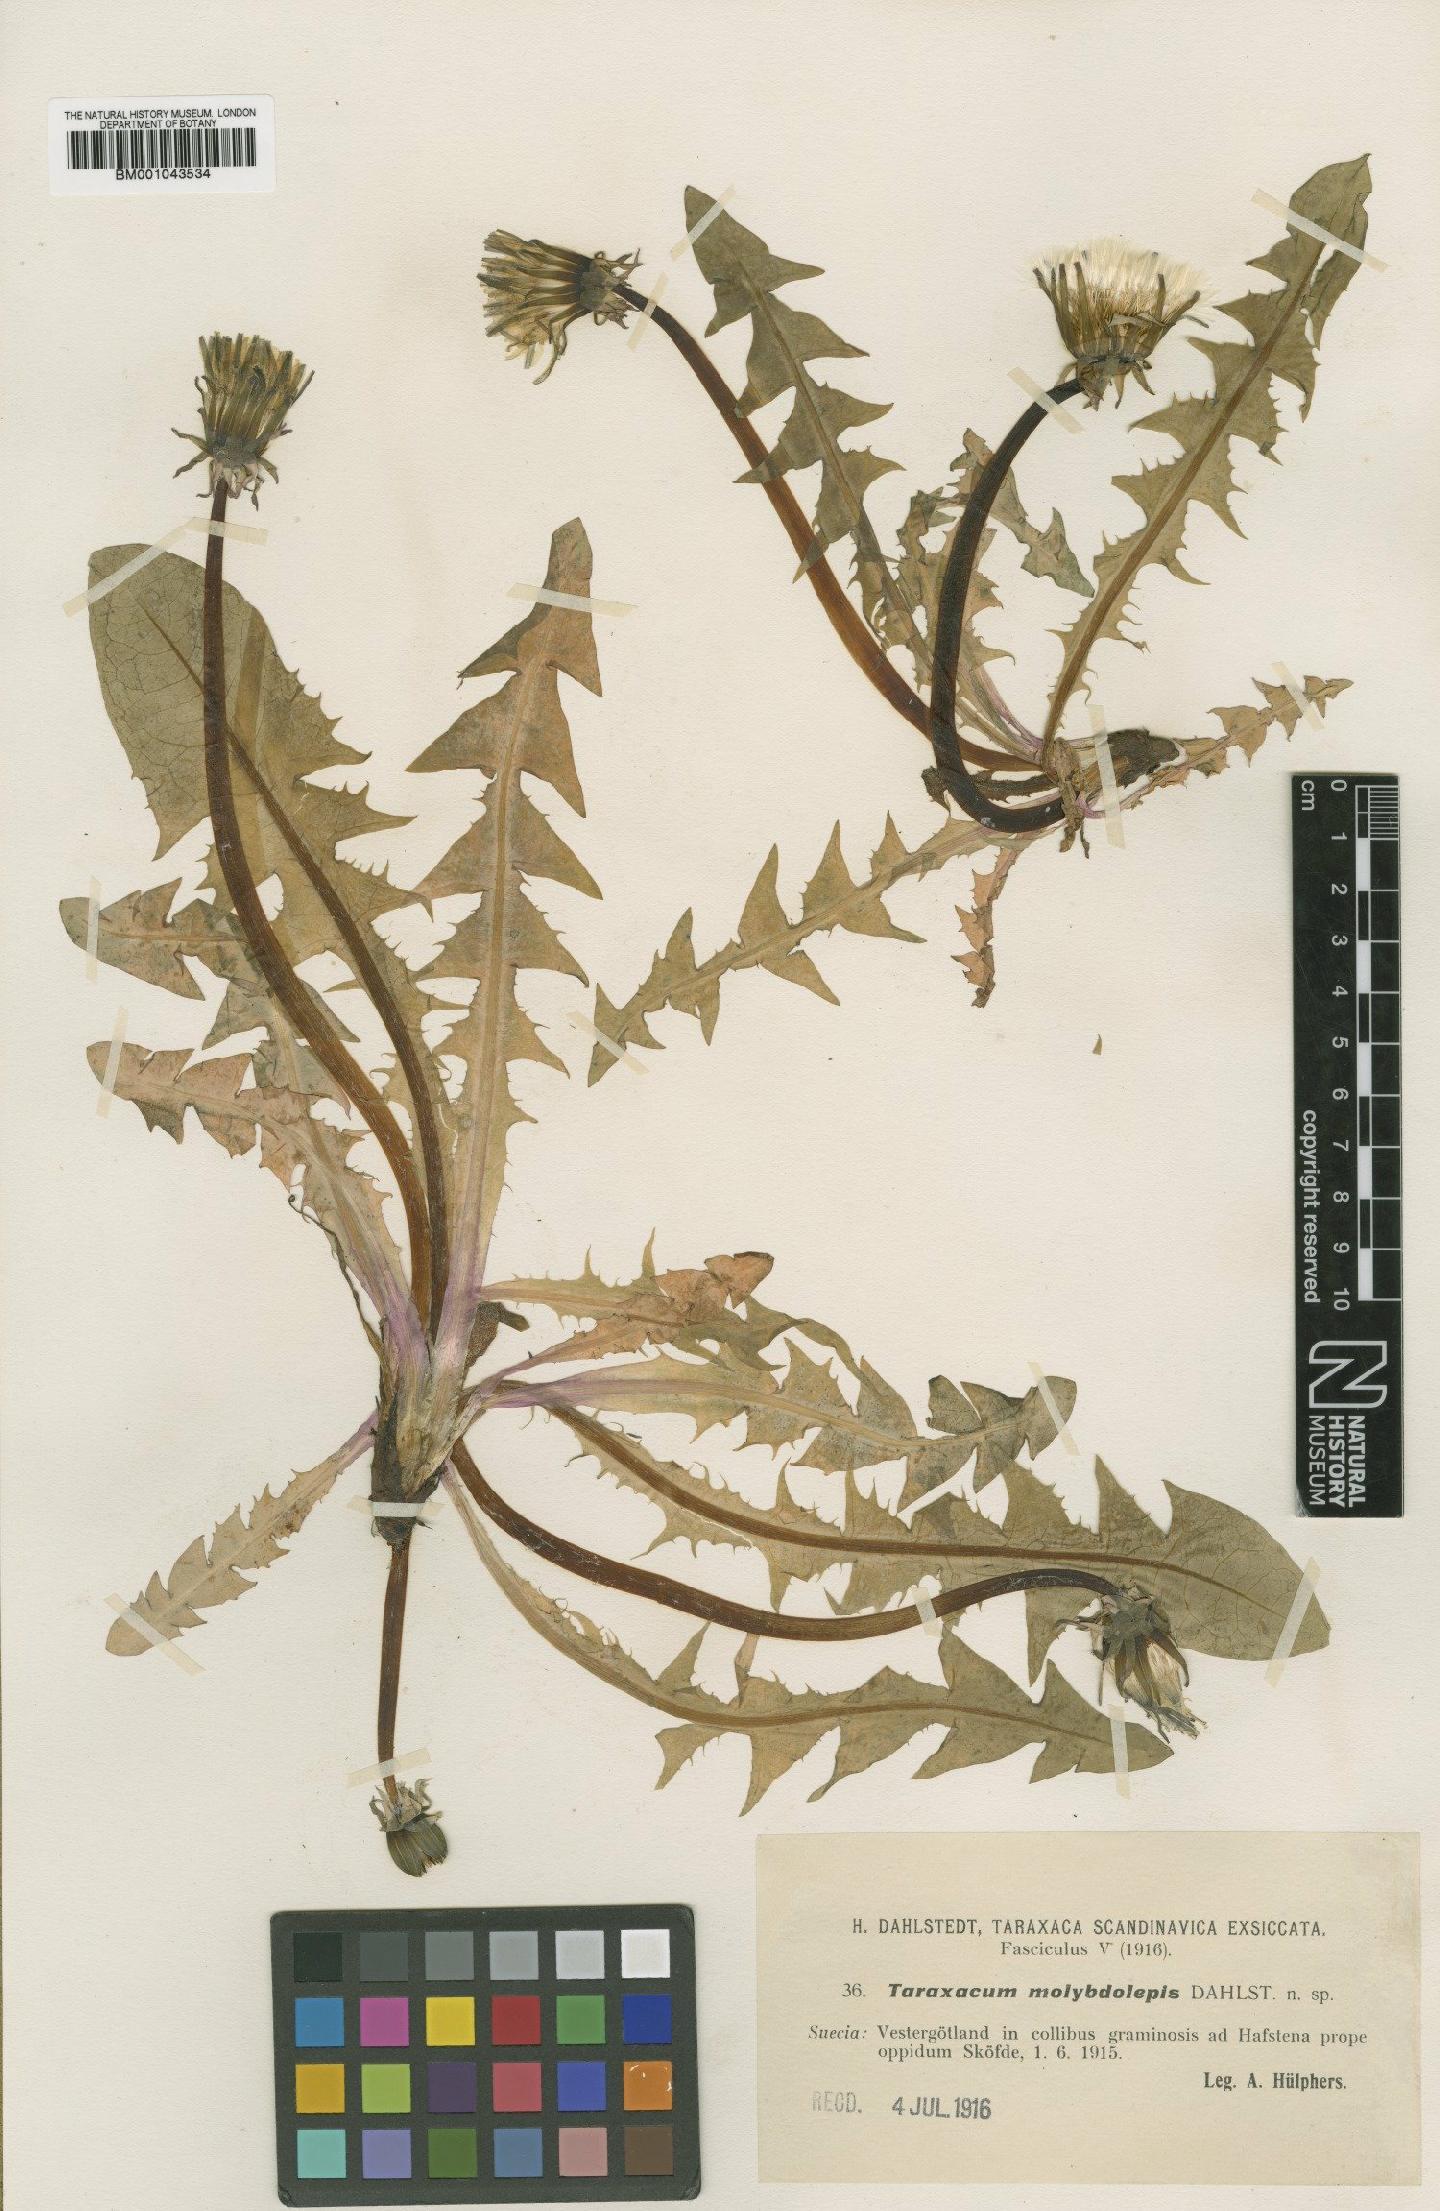 To NHMUK collection (Taraxacum molybdolepis Dahlst.; Type; NHMUK:ecatalogue:1999520)